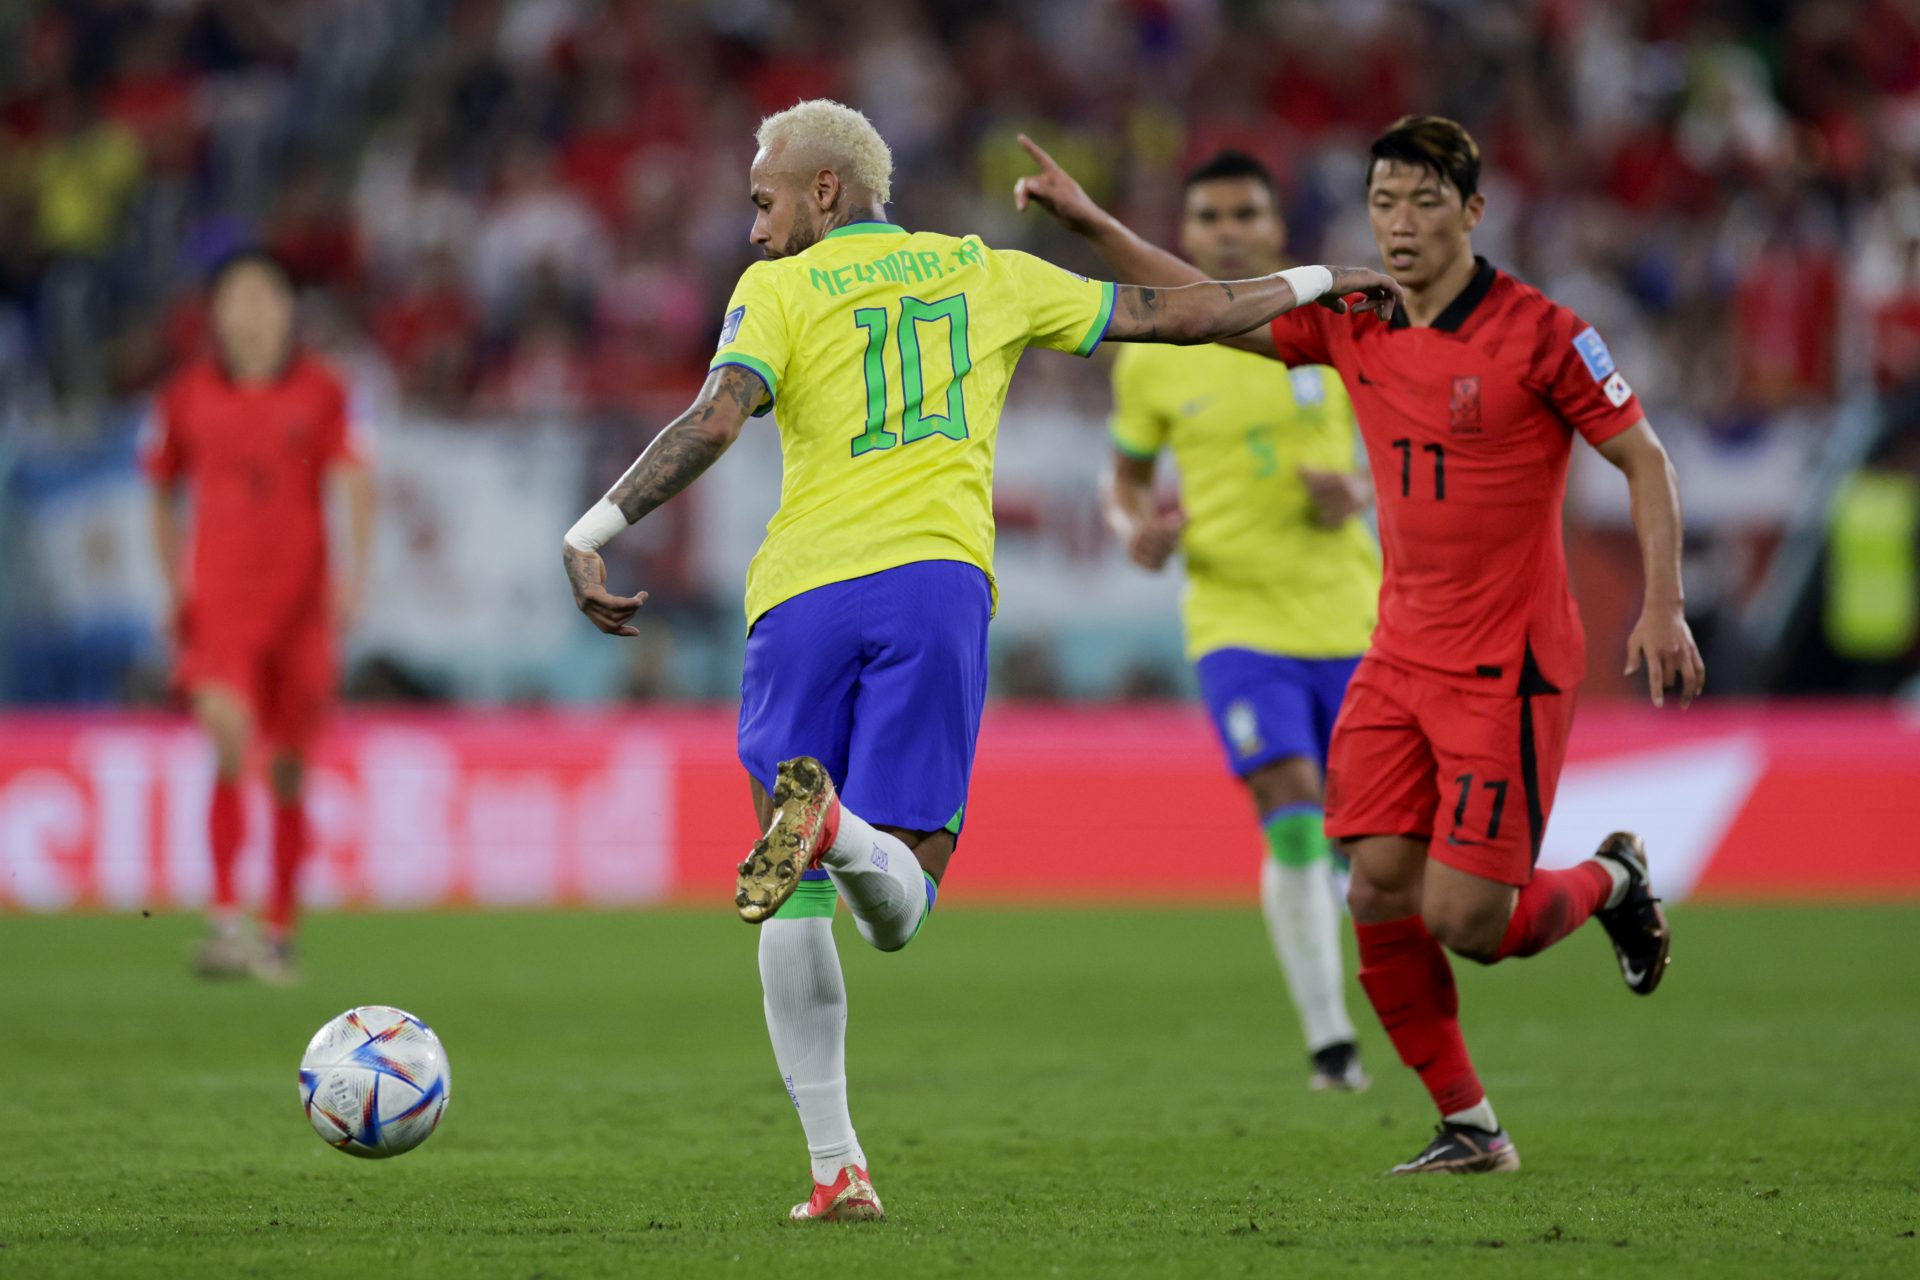 Neymar (i) de Brasil disputa un balón con Hwang Hee-chan de Corea del Sur hoy, en un partido de los octavos de final del Mundial de Fútbol Qatar 2022 entre Brasil y Corea del Sur en el estadio 974 en Doha (Catar).